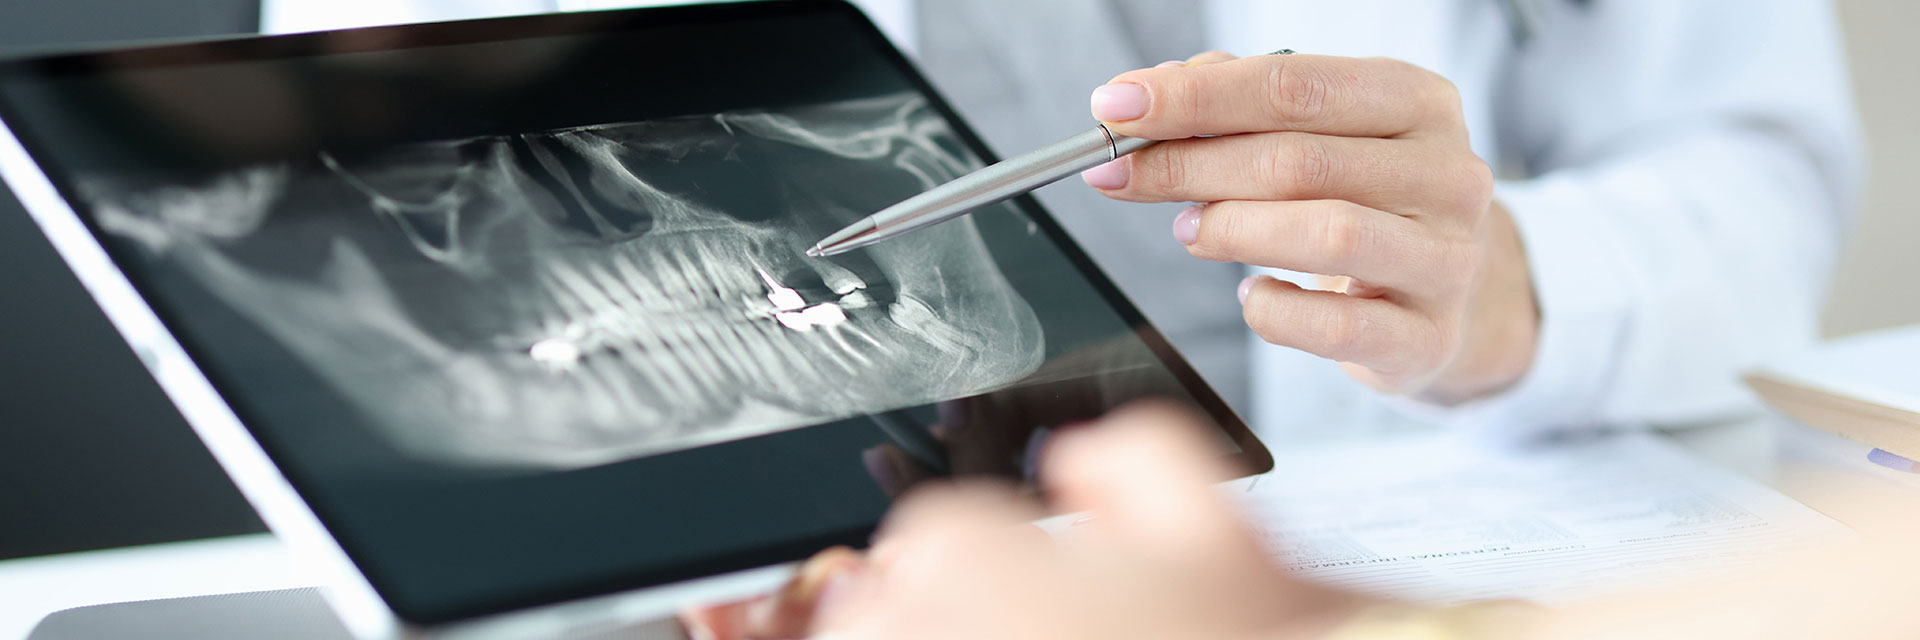 Ortodoncja cyfrowa